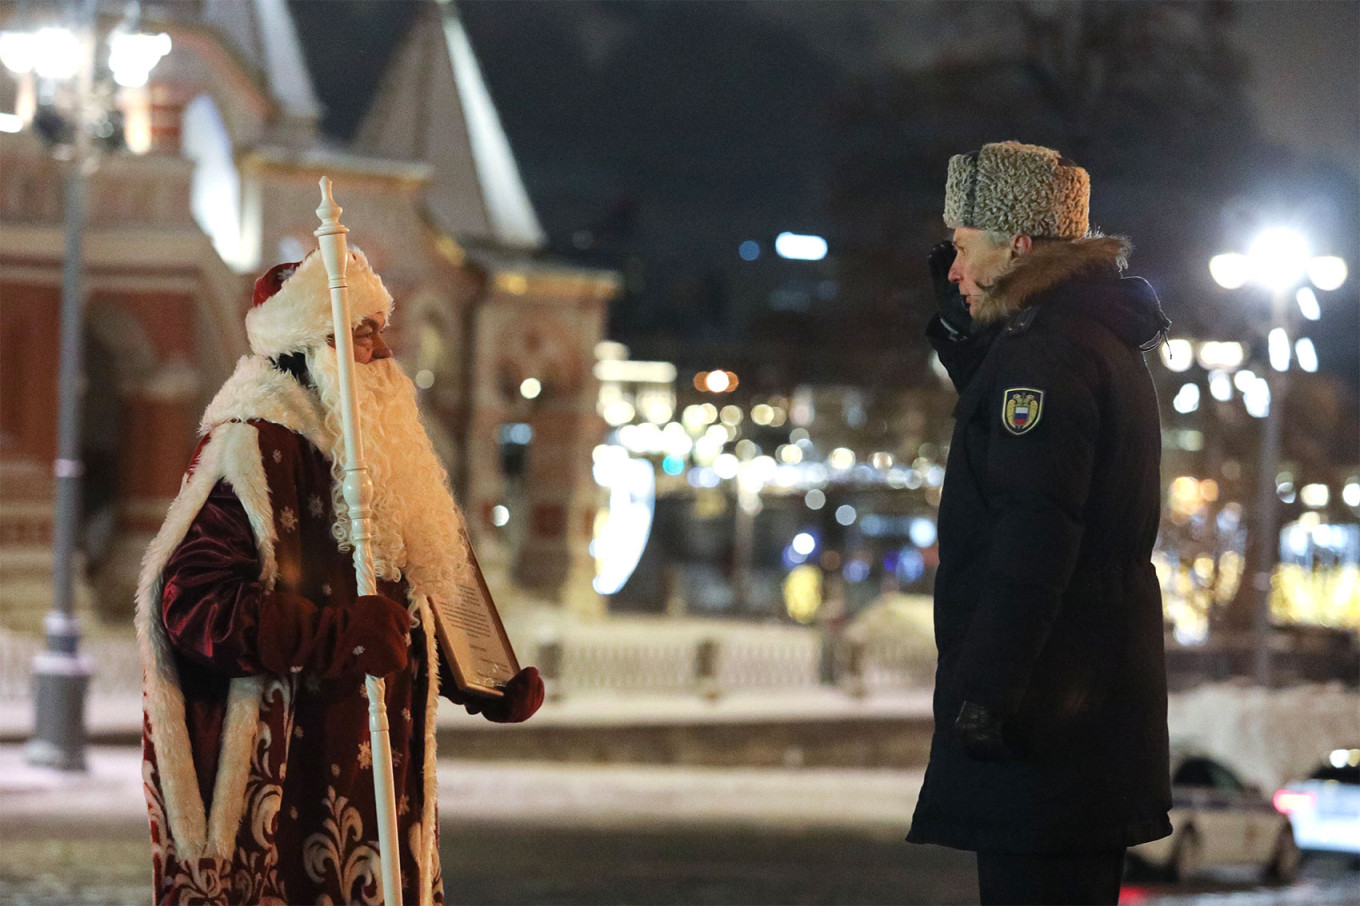 Un bărbat îmbrăcat ca Ded Moroz (Moș Gerilă) văzut în apropierea Kremlinului. Sursa foto: The Mosow Times